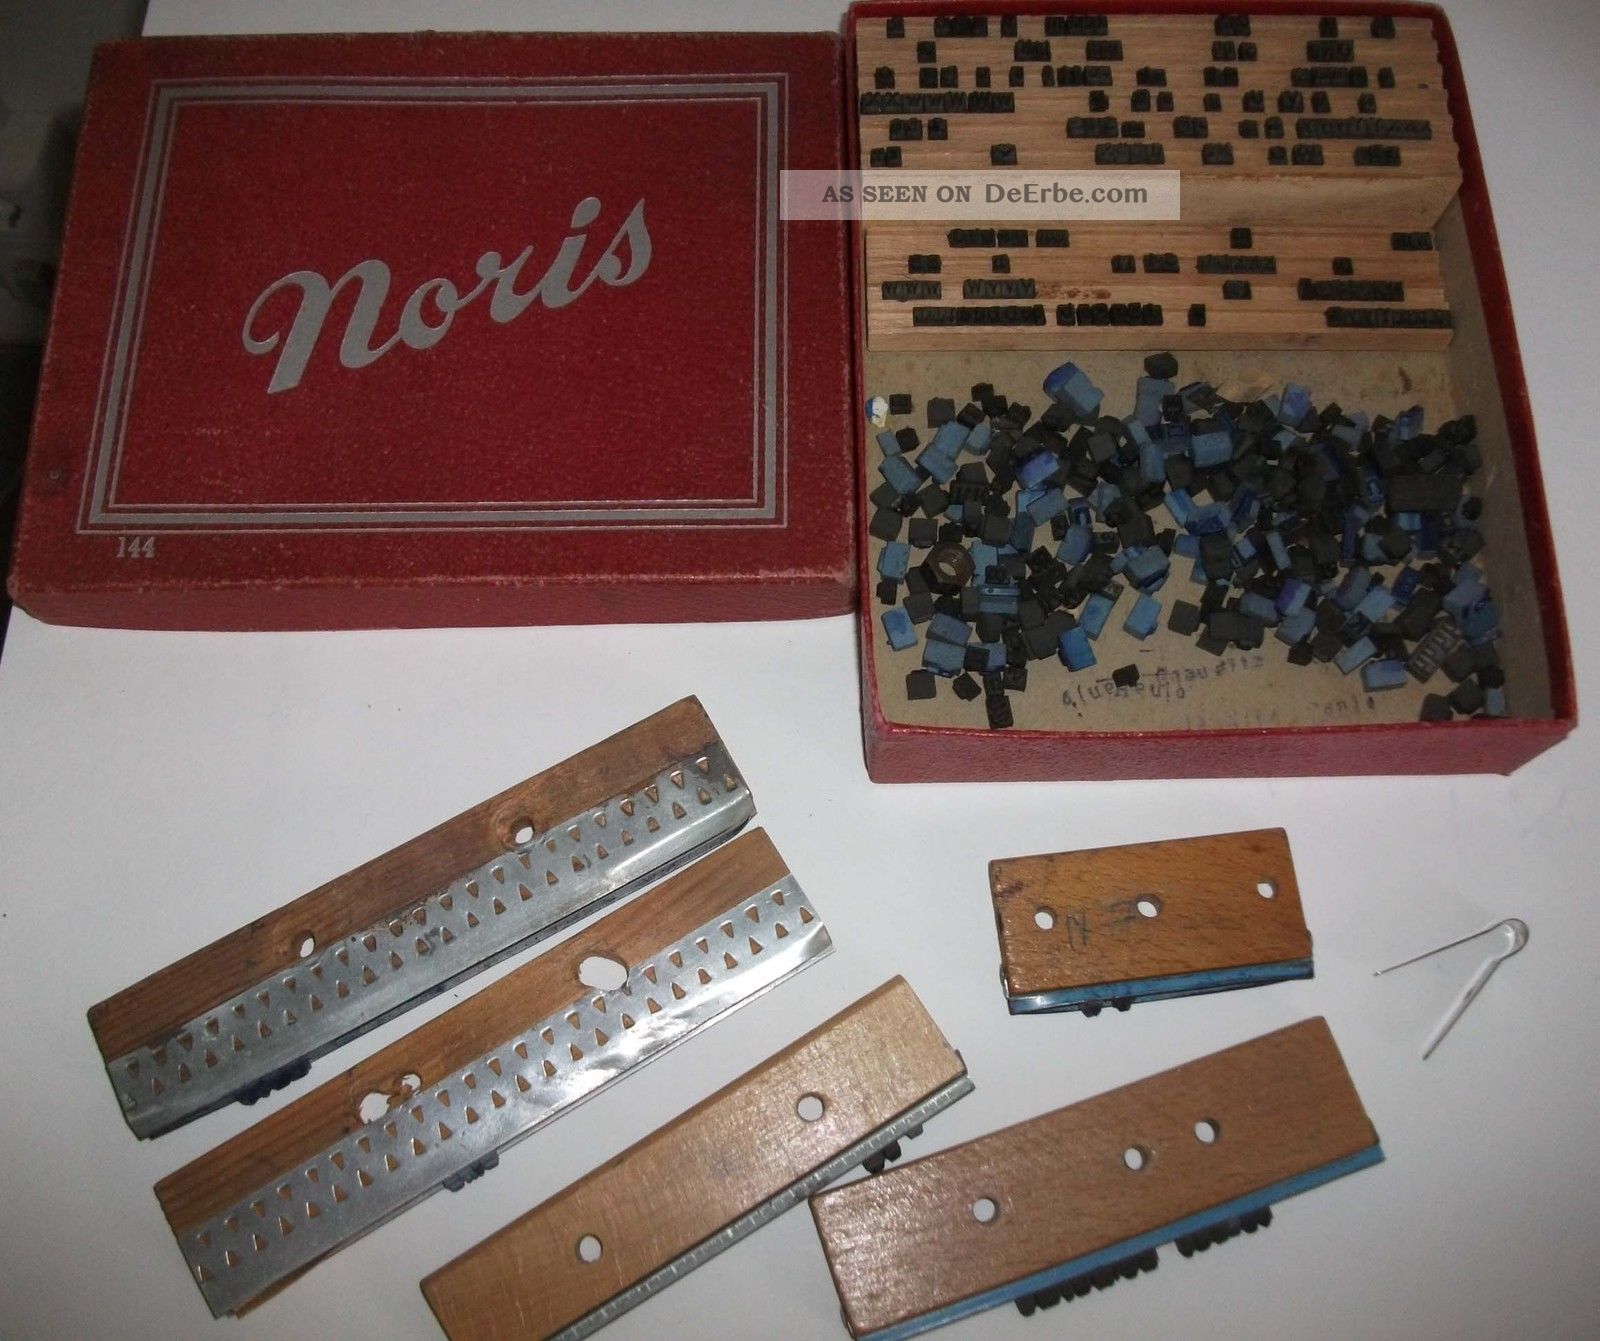 Alter Buchstaben - Stempel - Kasten Noris 144 Typograph Antikspielzeug Bild